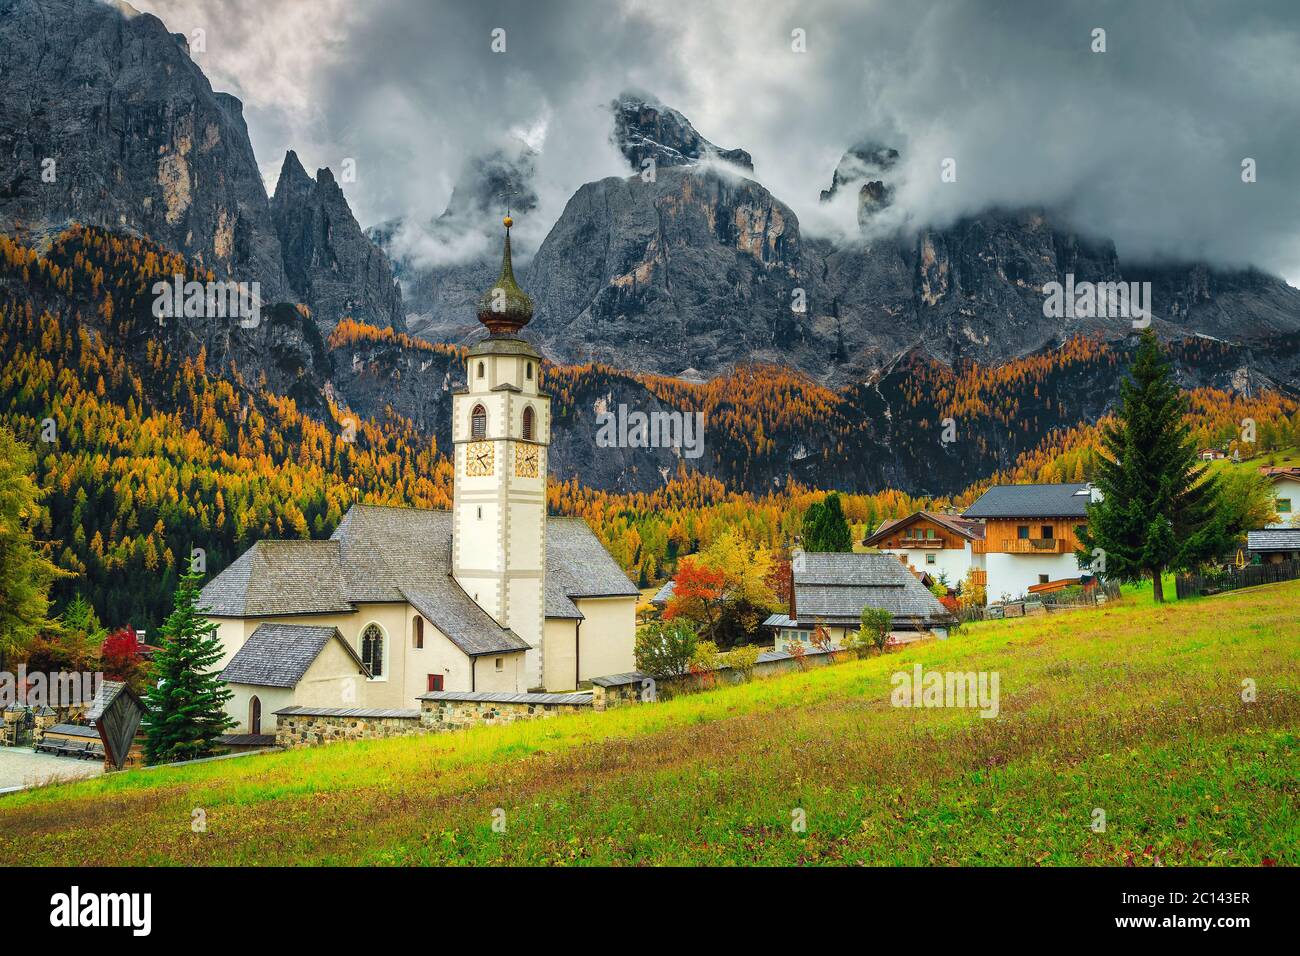 Splendido scenario montano autunnale con una graziosa chiesa nel favoloso villaggio alpino, Colfosco, Dolomiti, Italia, Europa Foto Stock